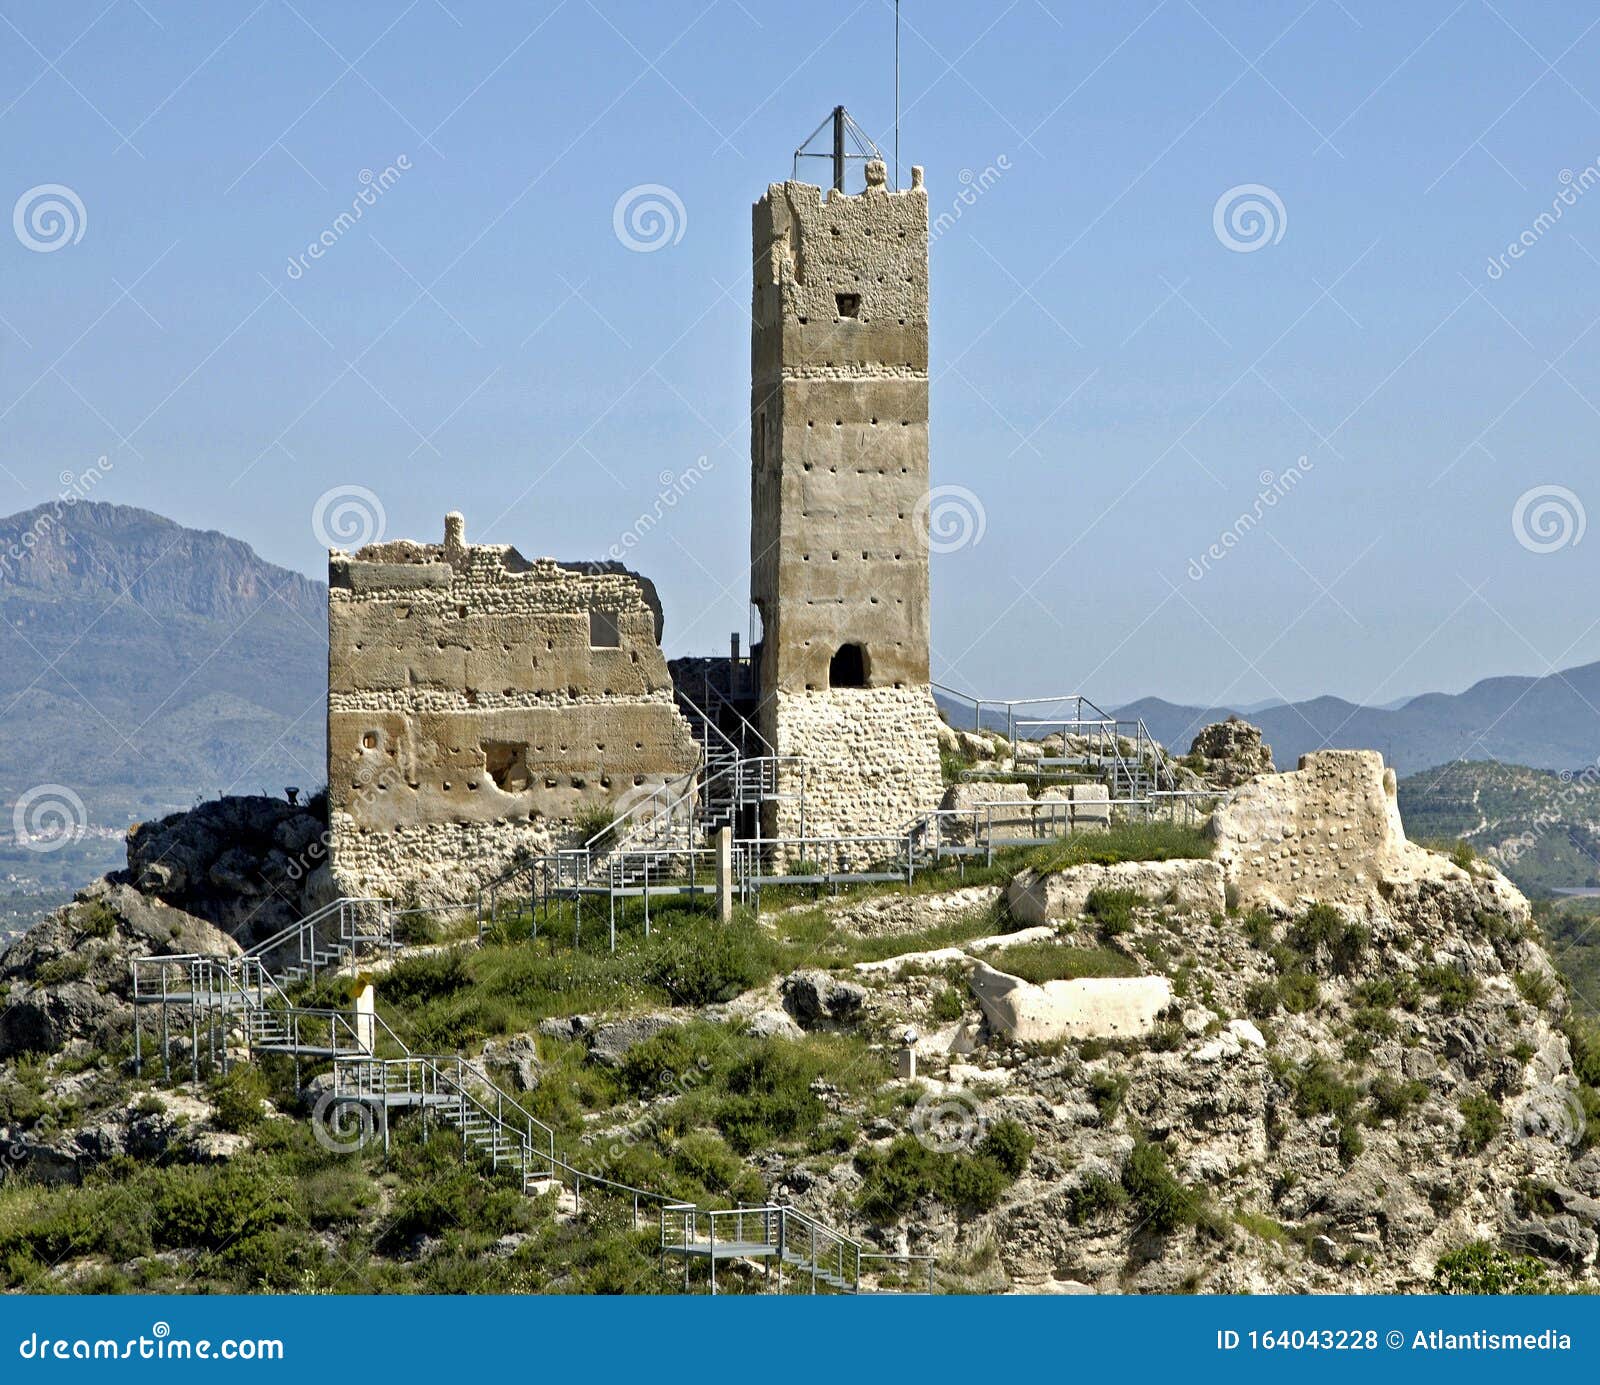 castle ruins, penella, cocentaina, alcoy/alcoi, alicante - spain